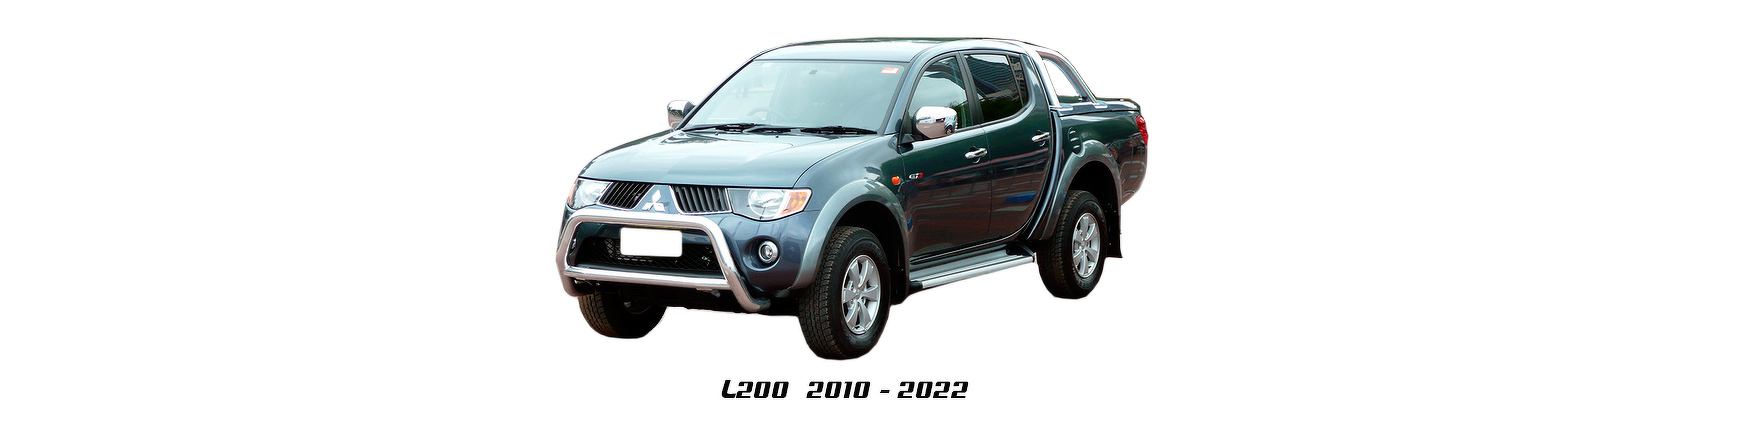 Piezas y Recambios de Mitsubishi L200 2010 a 2015 | Veramauto.es